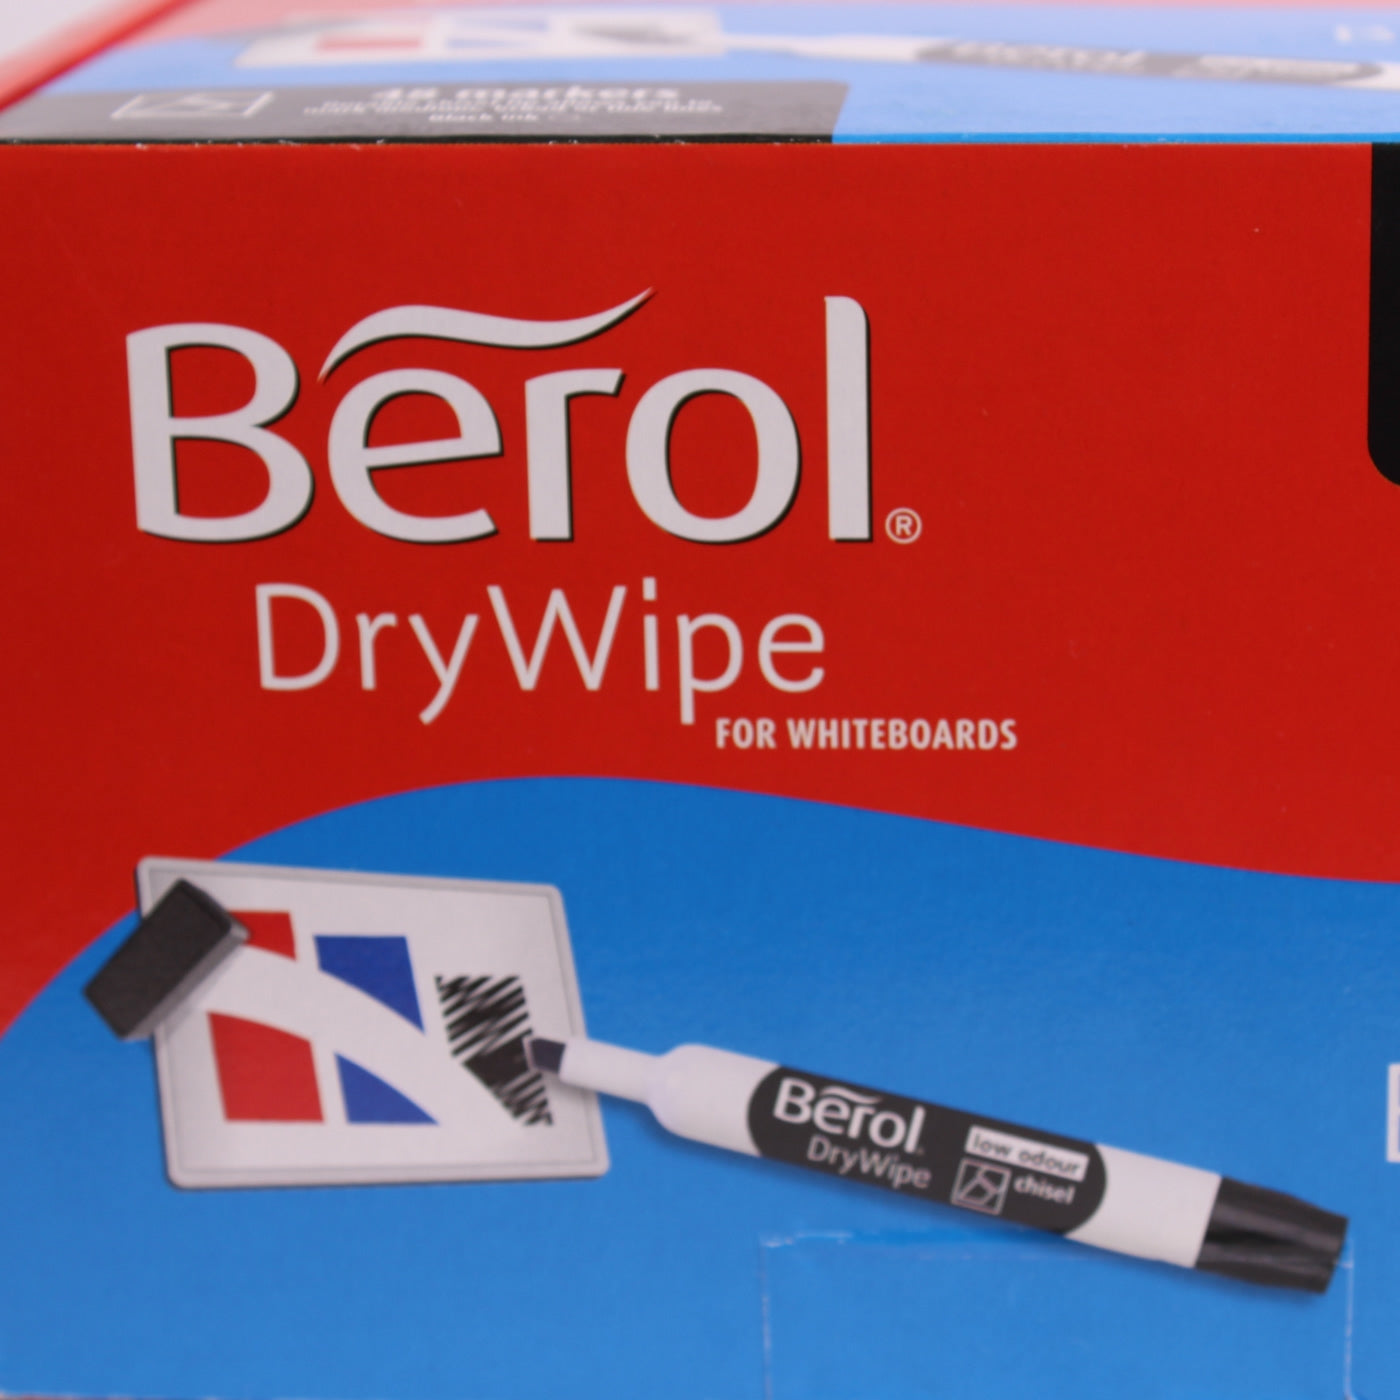 Dry wipe maker pens